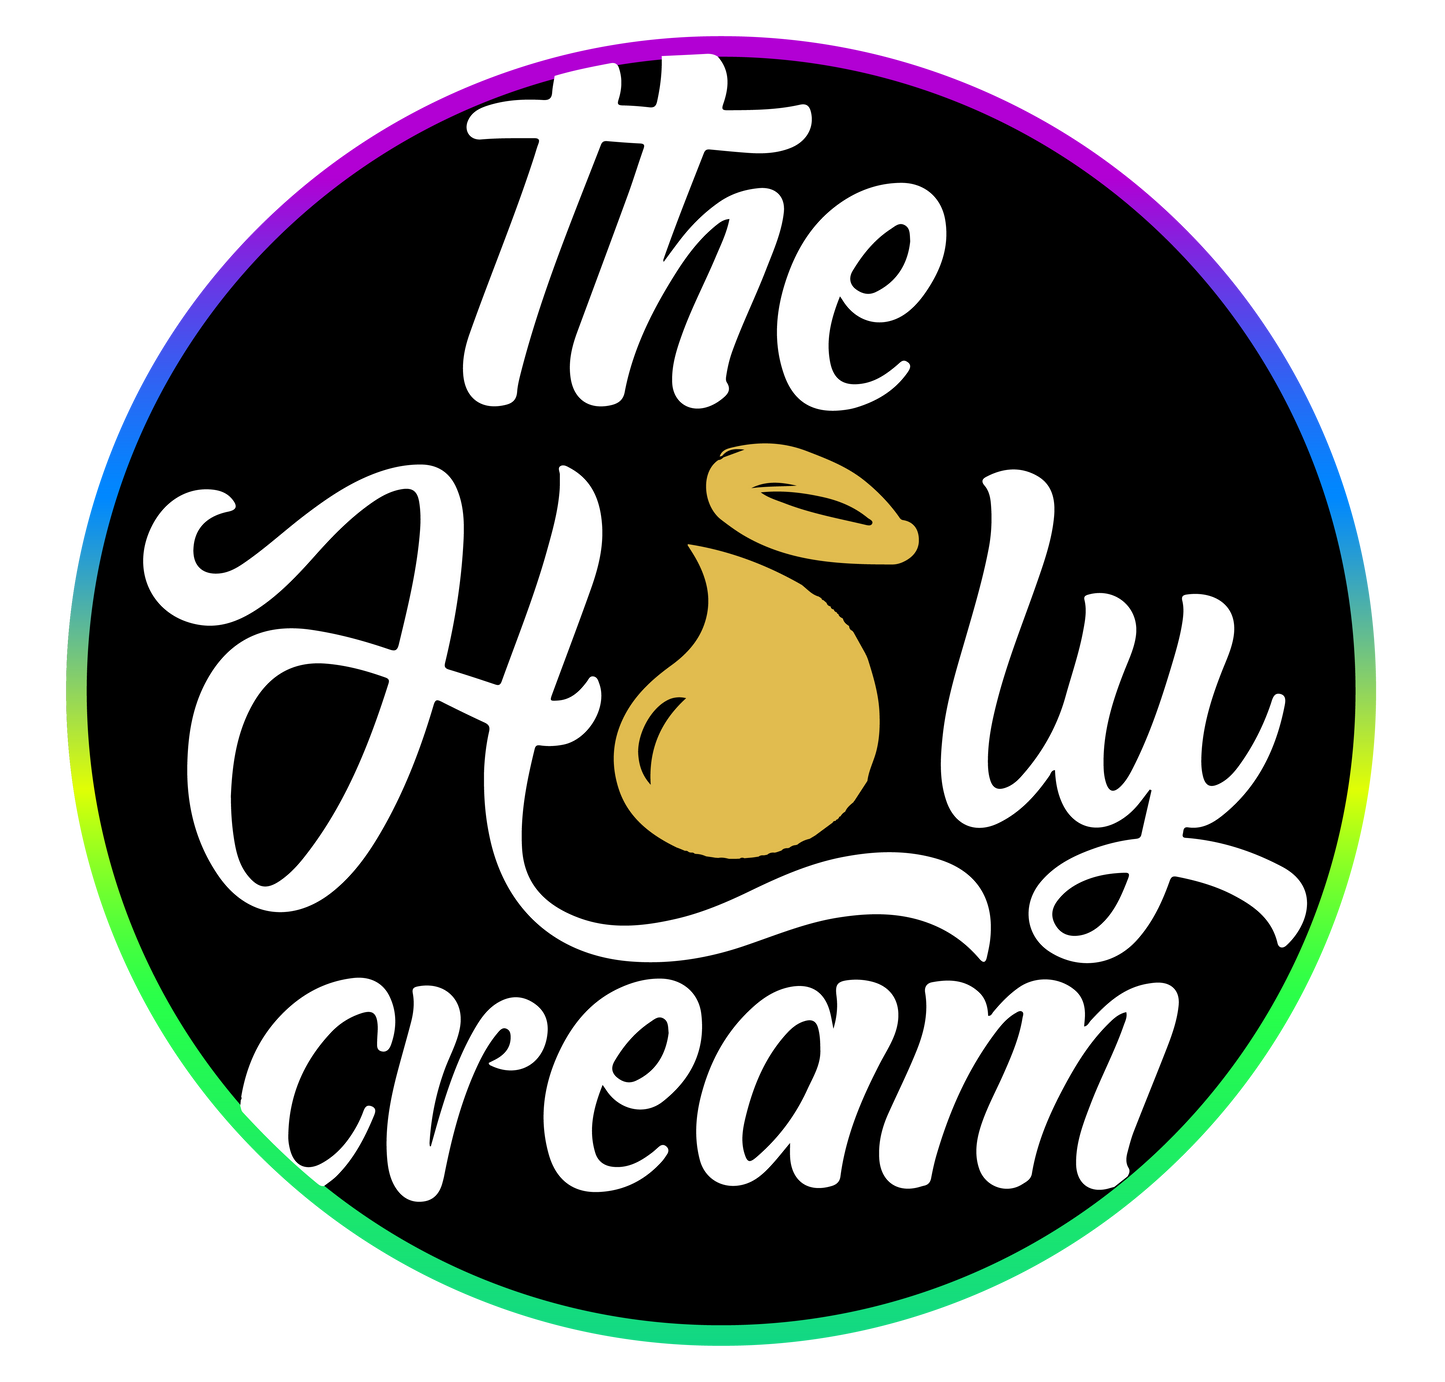 The Holy Cream - Flor Interior - Gas Cake